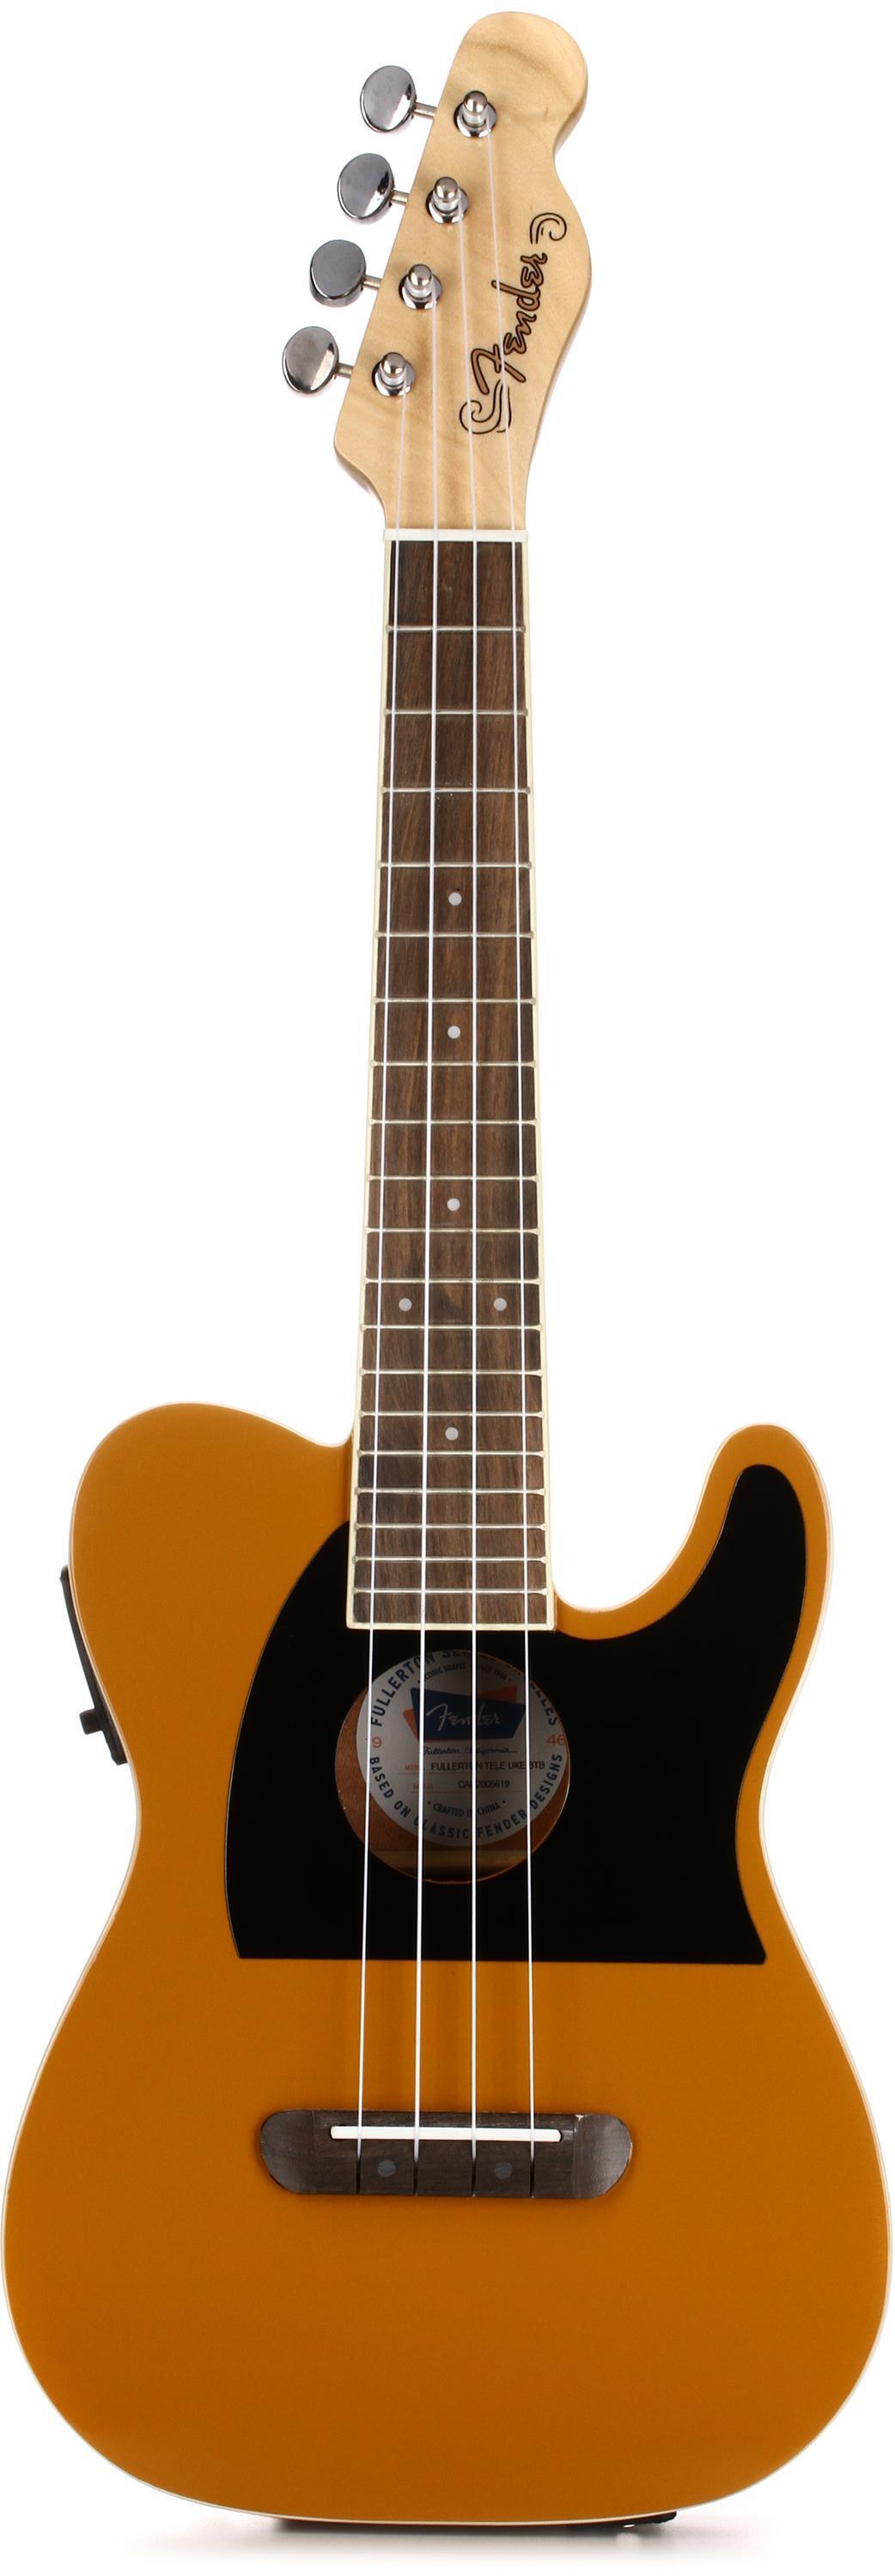 Bundled Item: Fender Fullerton Tele Uke - Butterscotch Blonde